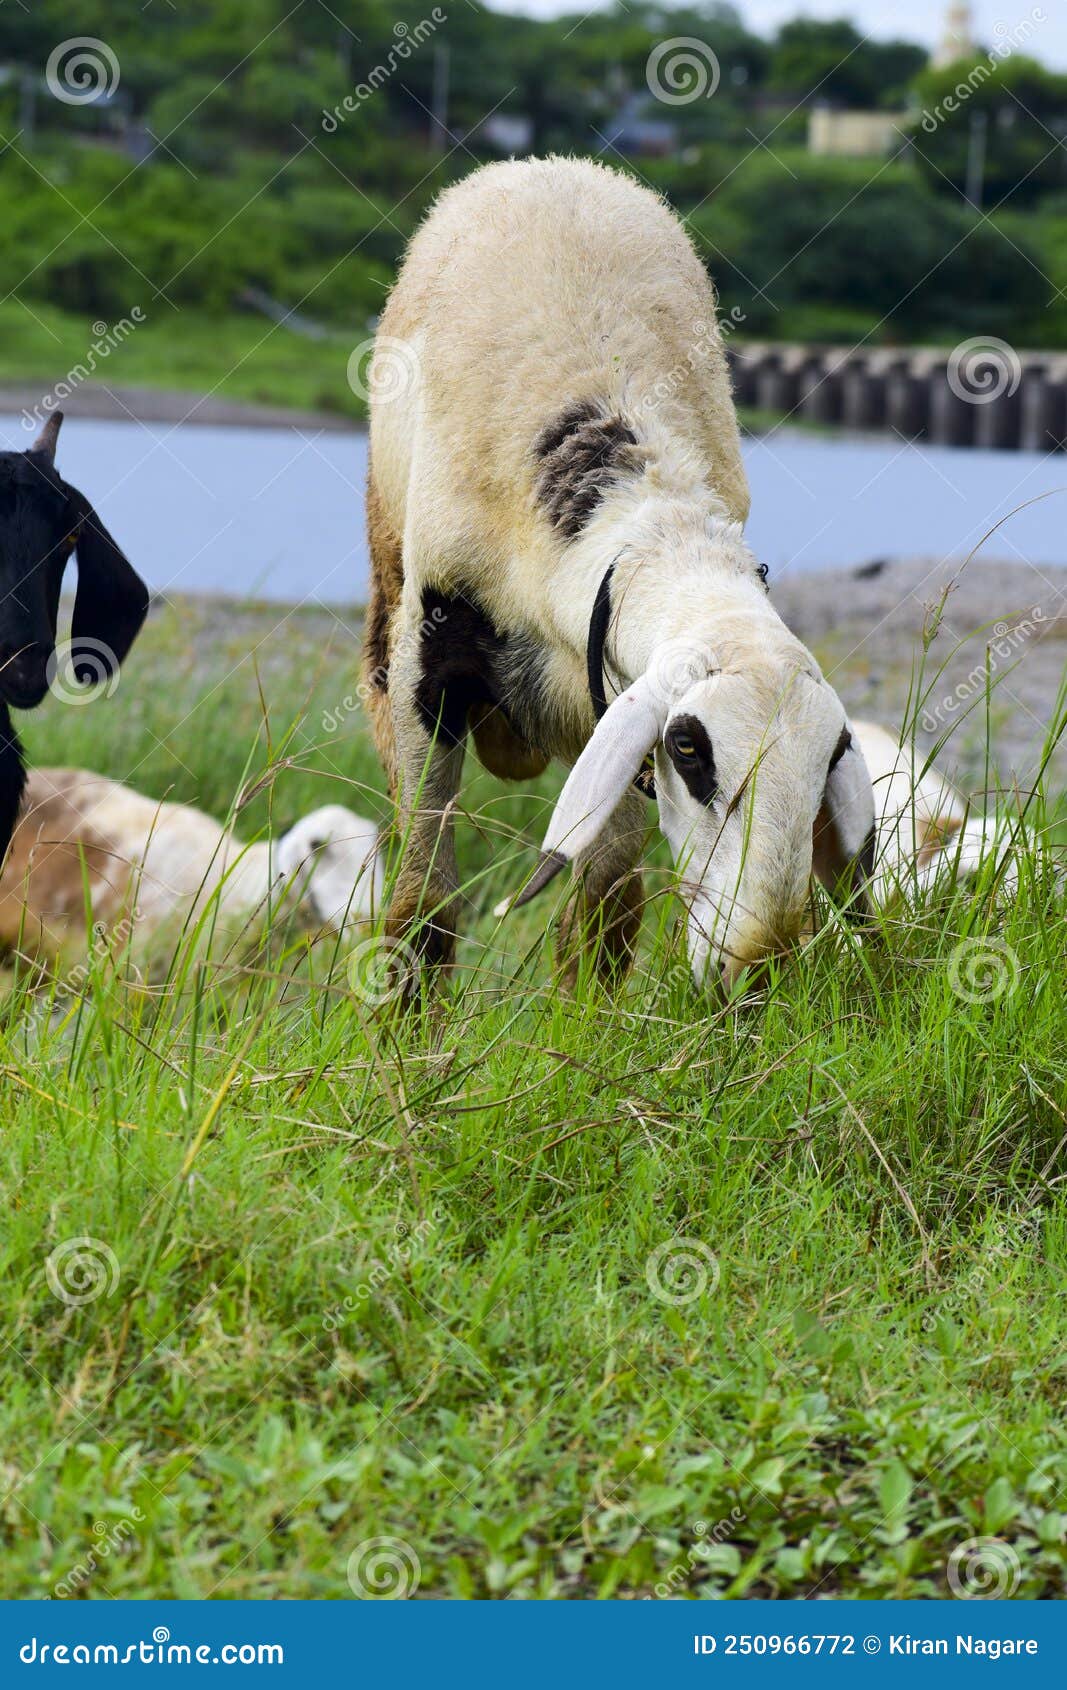 图片素材 : 草, 野生动物, 放牧, 牧场, 哺乳动物, 动物群, 脊椎动物, 大号角, 牛山羊家庭, 盘羊 4251x3188 ...